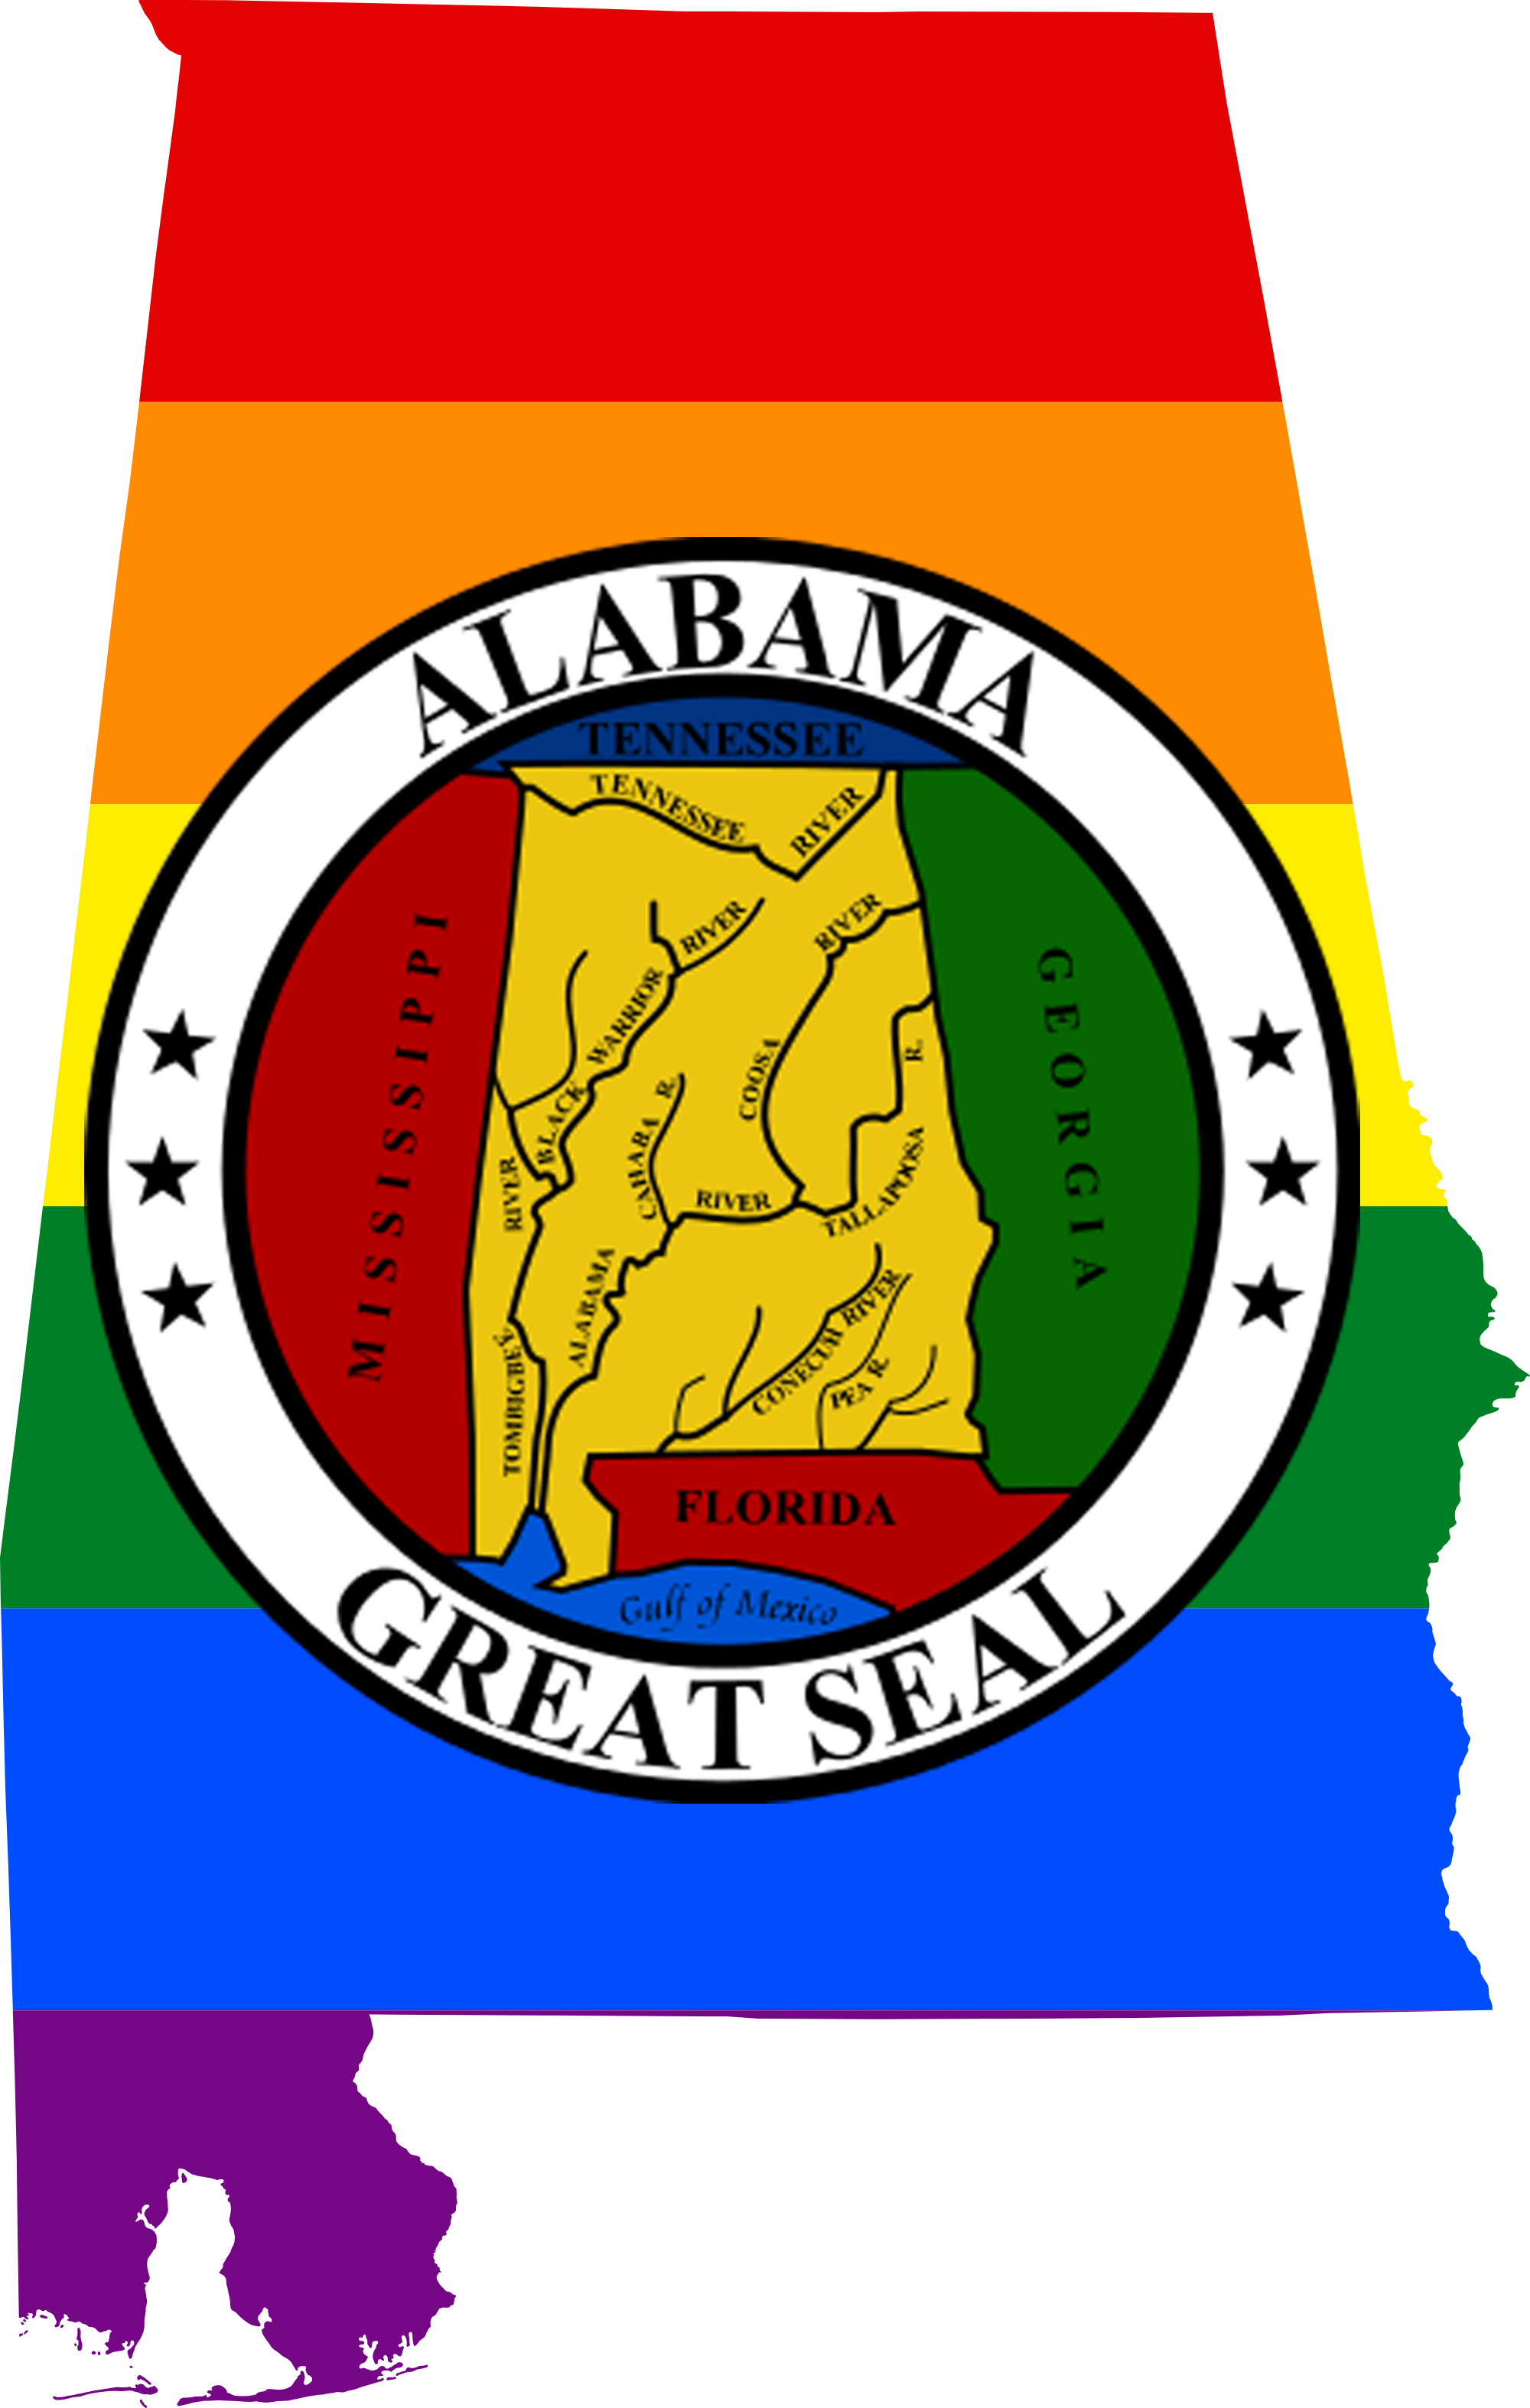 Alabama LGBTQ